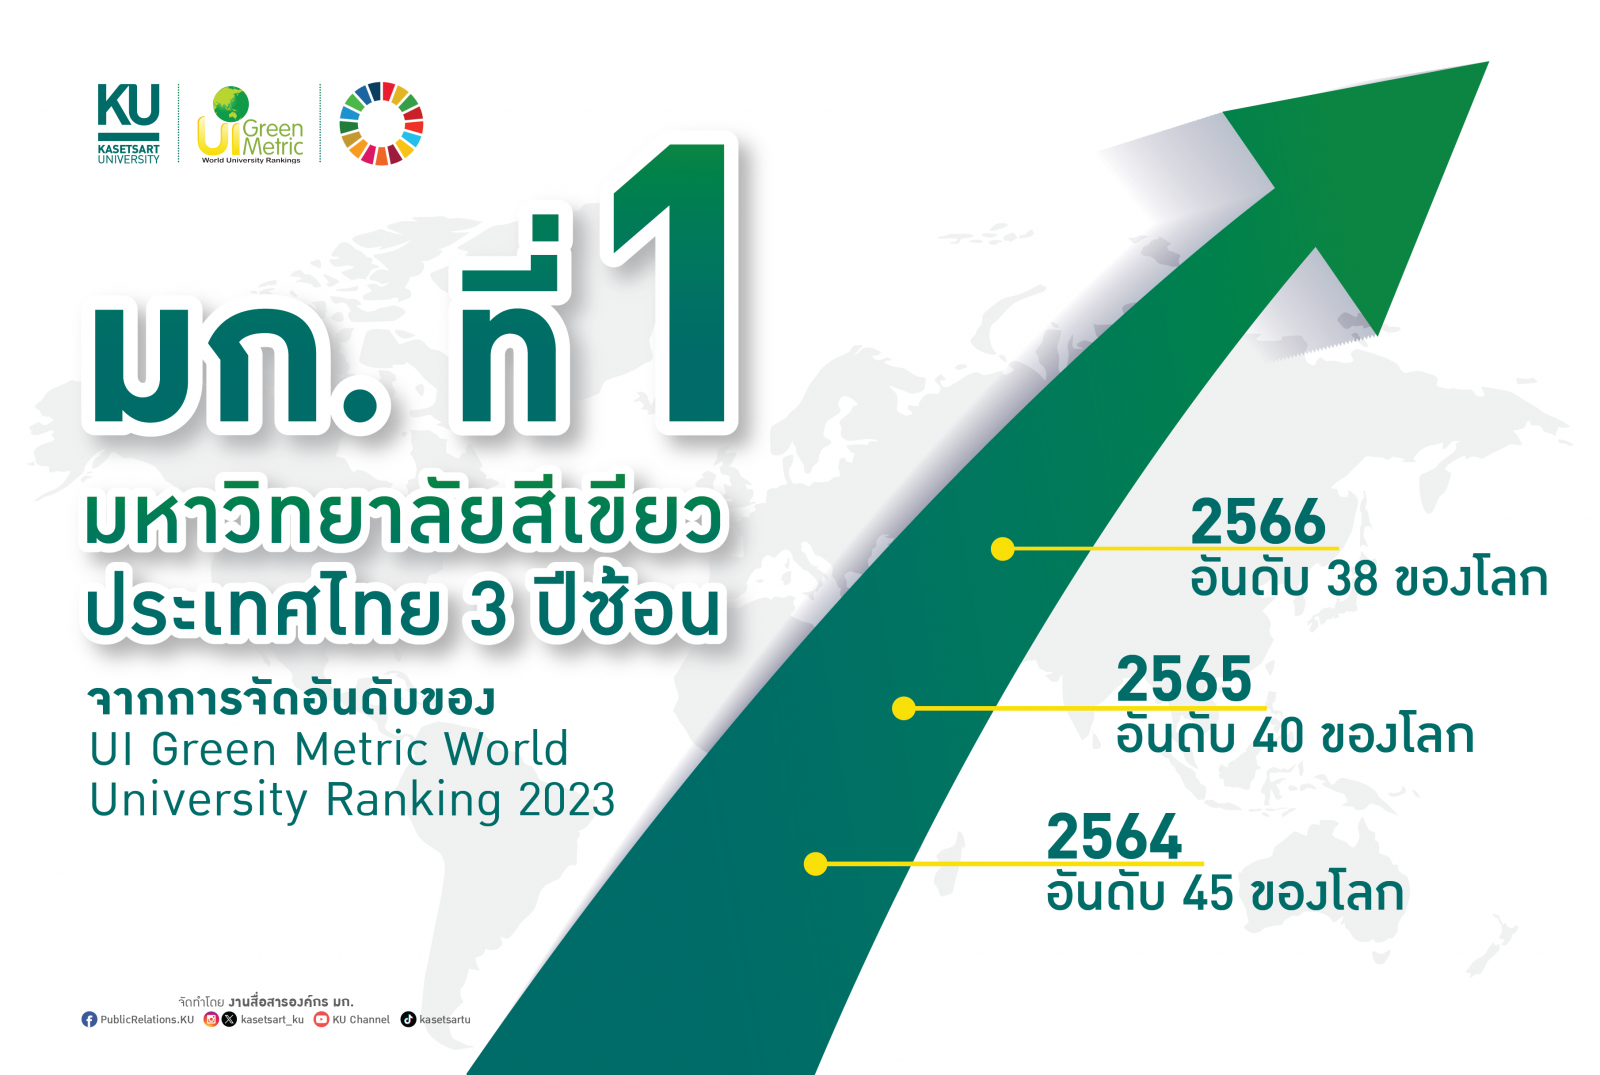 มหาวิทยาลัยเกษตรศาสตร์ ครองแชมป์อันดับ 1 ม.สีเขียวของไทย ติดต่อกัน 3 ปี ซ้อน ( 2564-2566) ขึ้นแท่น อันดับที่ 38 ของโลก